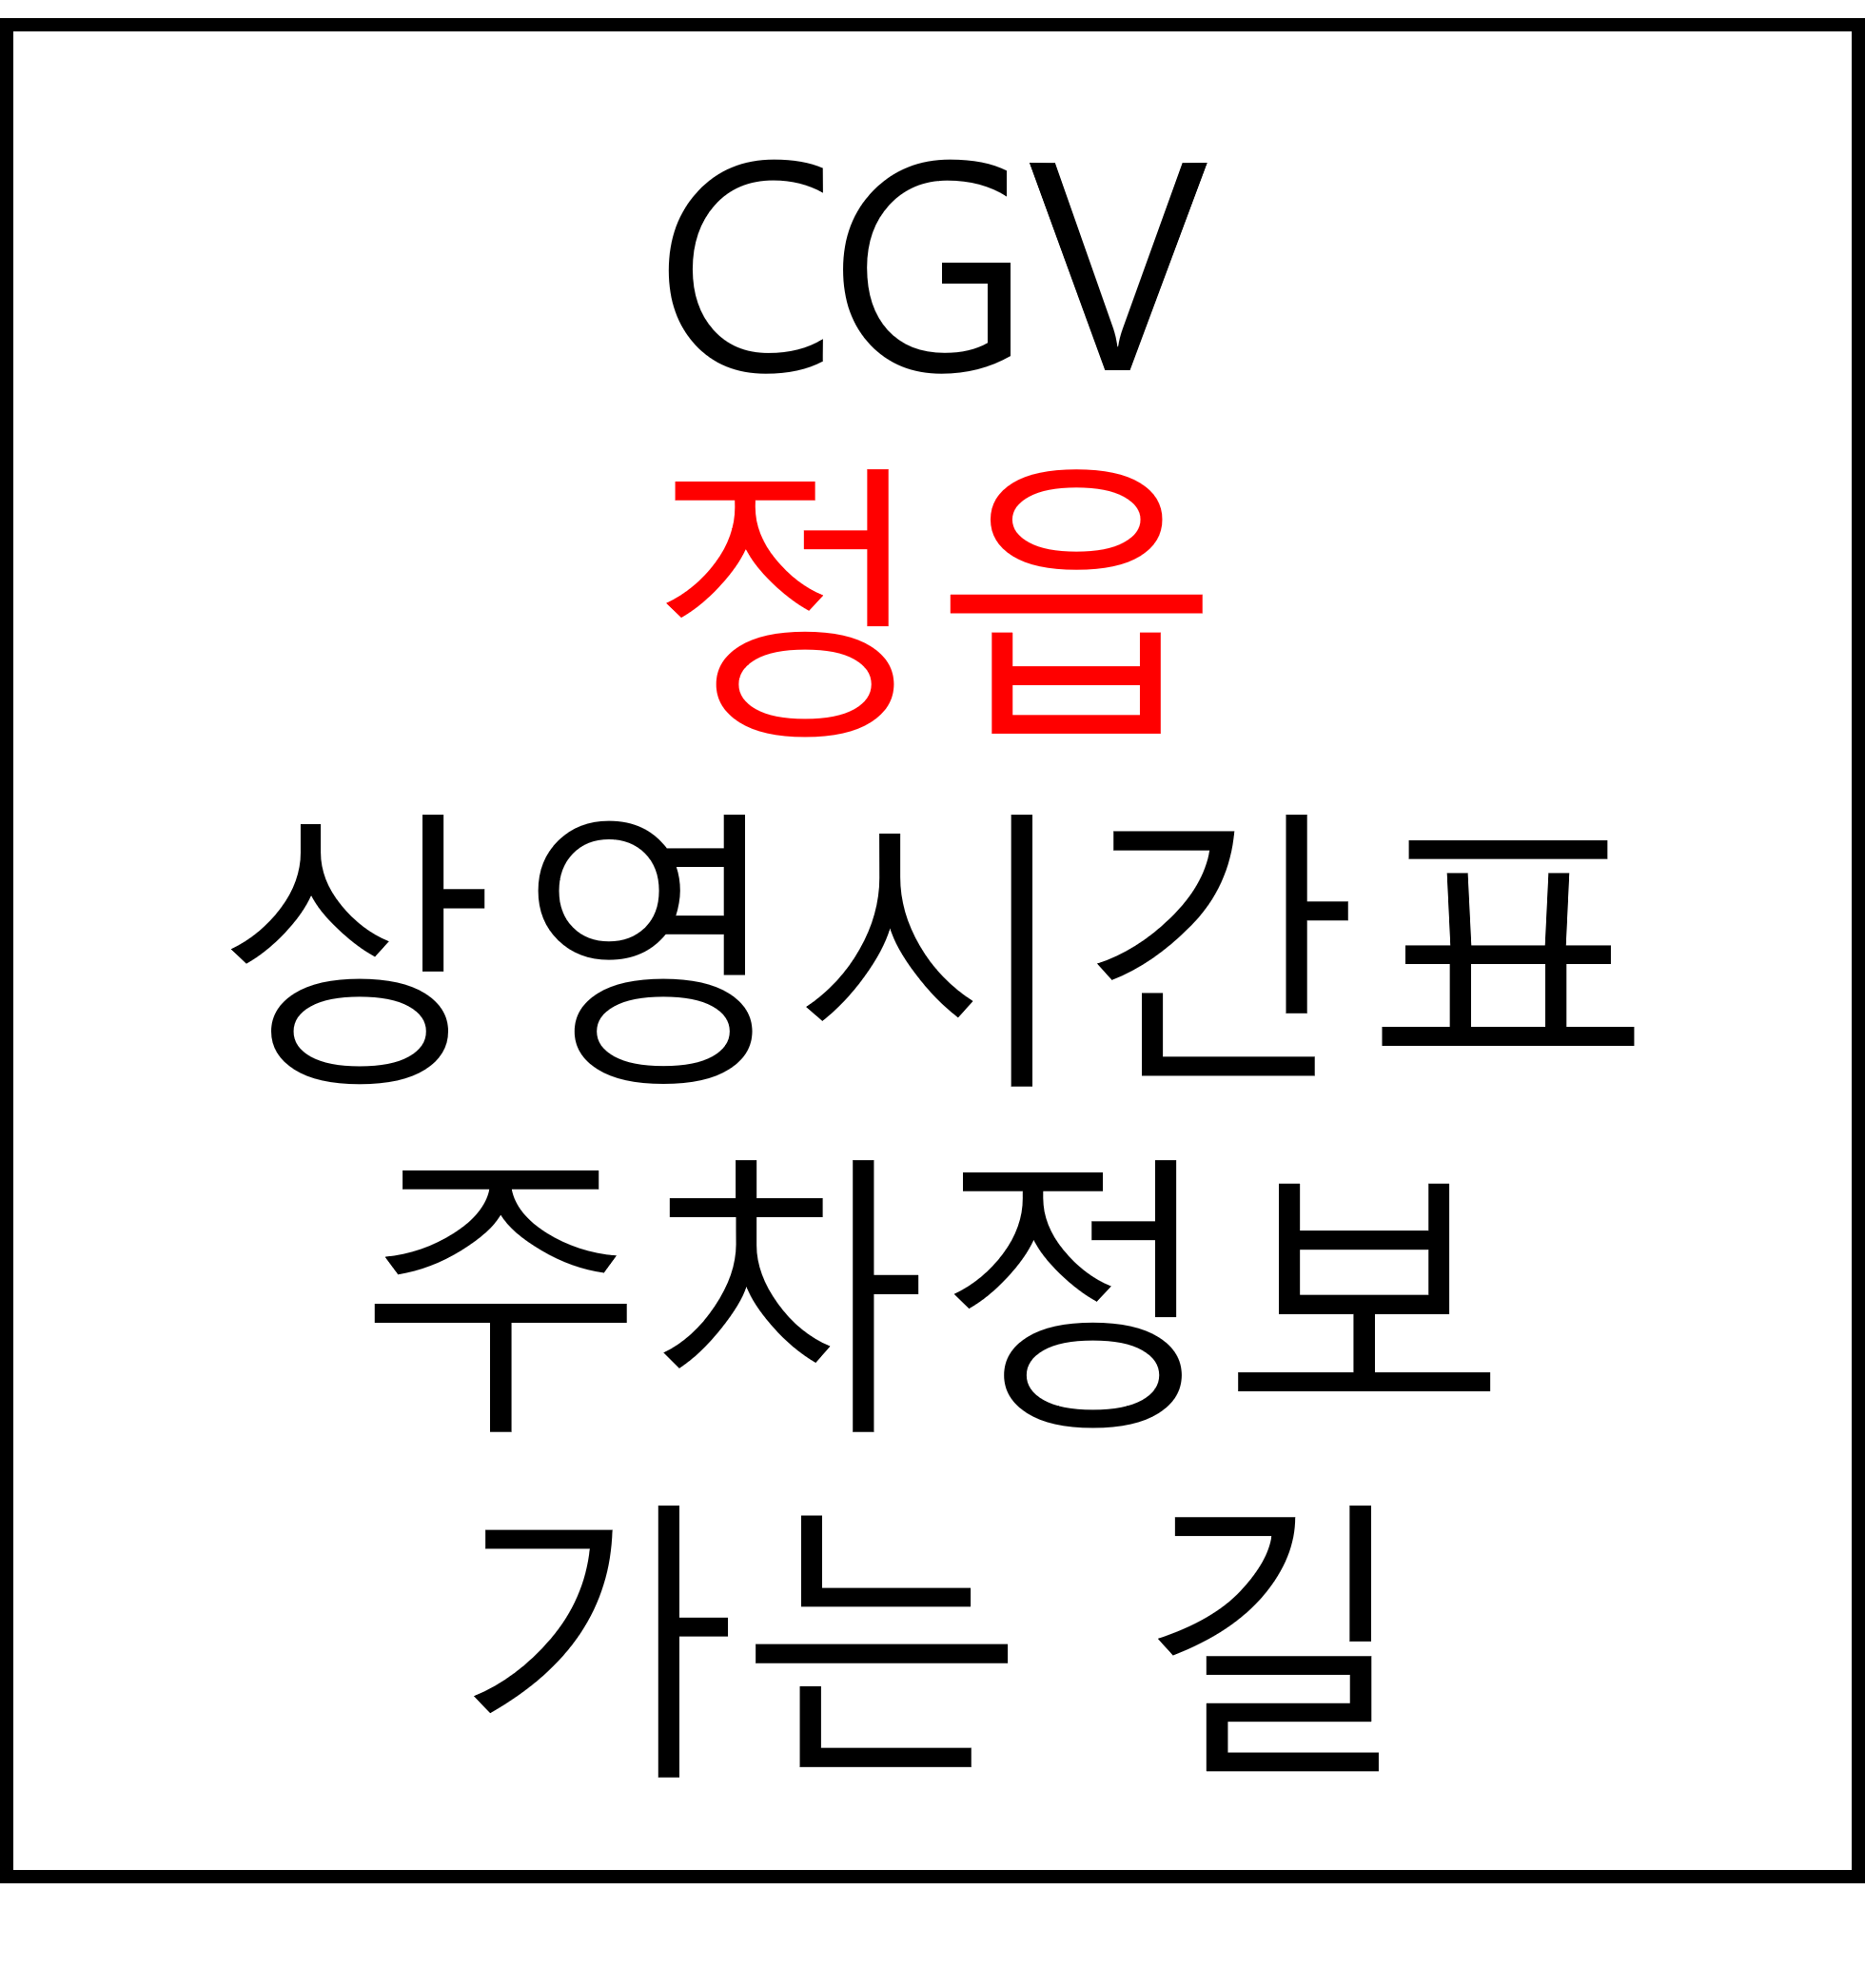 정읍 CGV 상영시간표, 주차장, 주차요금, 가는법, 예매, 관람료, 위치, 할인 혜택 확인